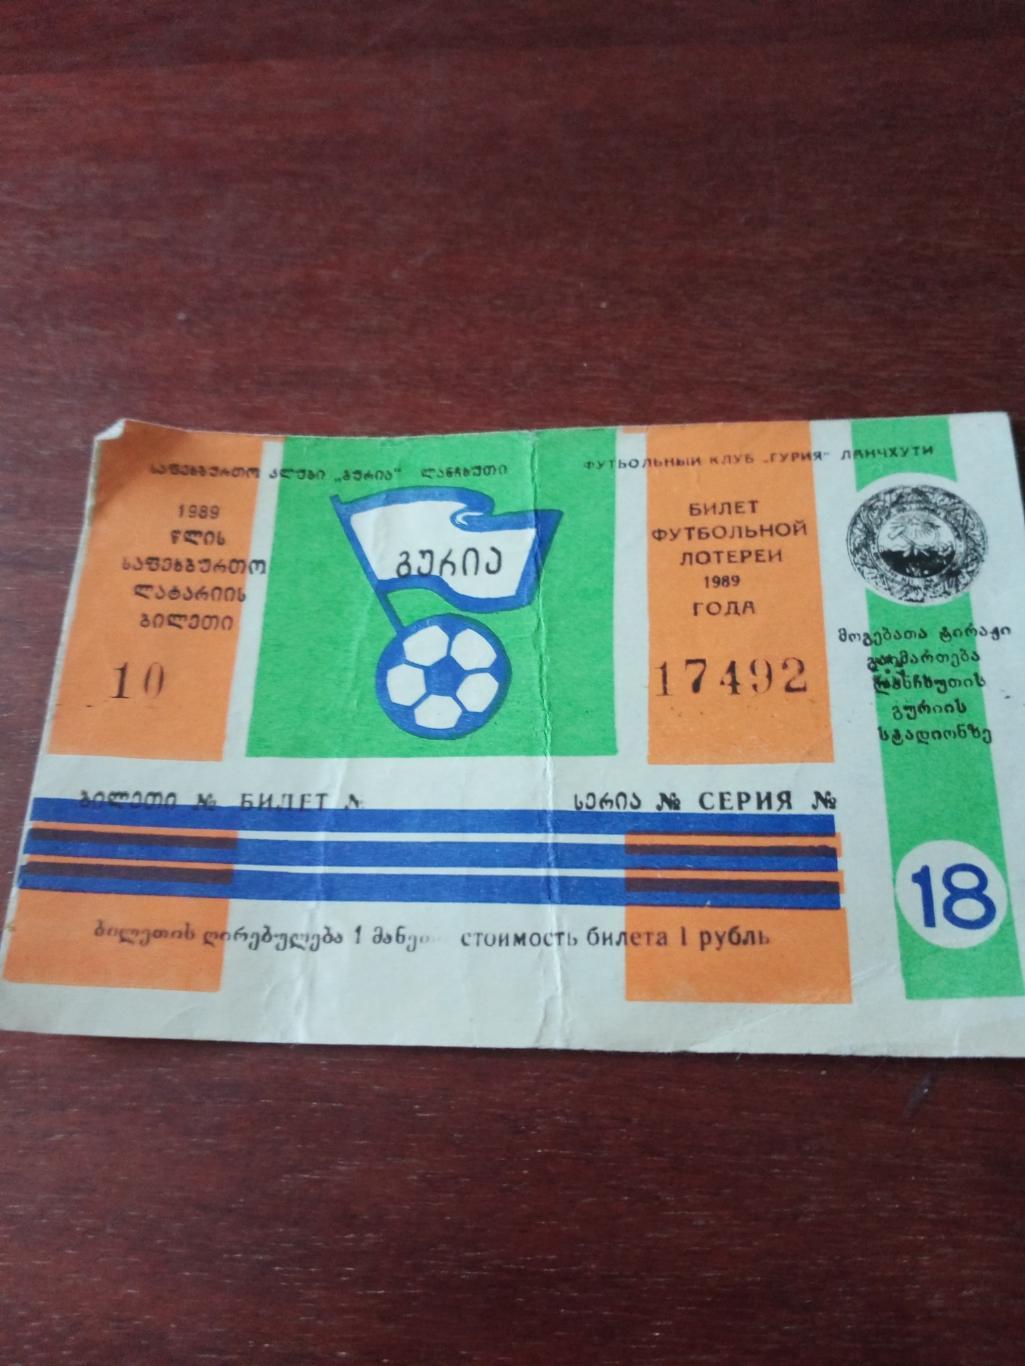 Билет футбольной лотереи.1989 год. стадион Ланчхути